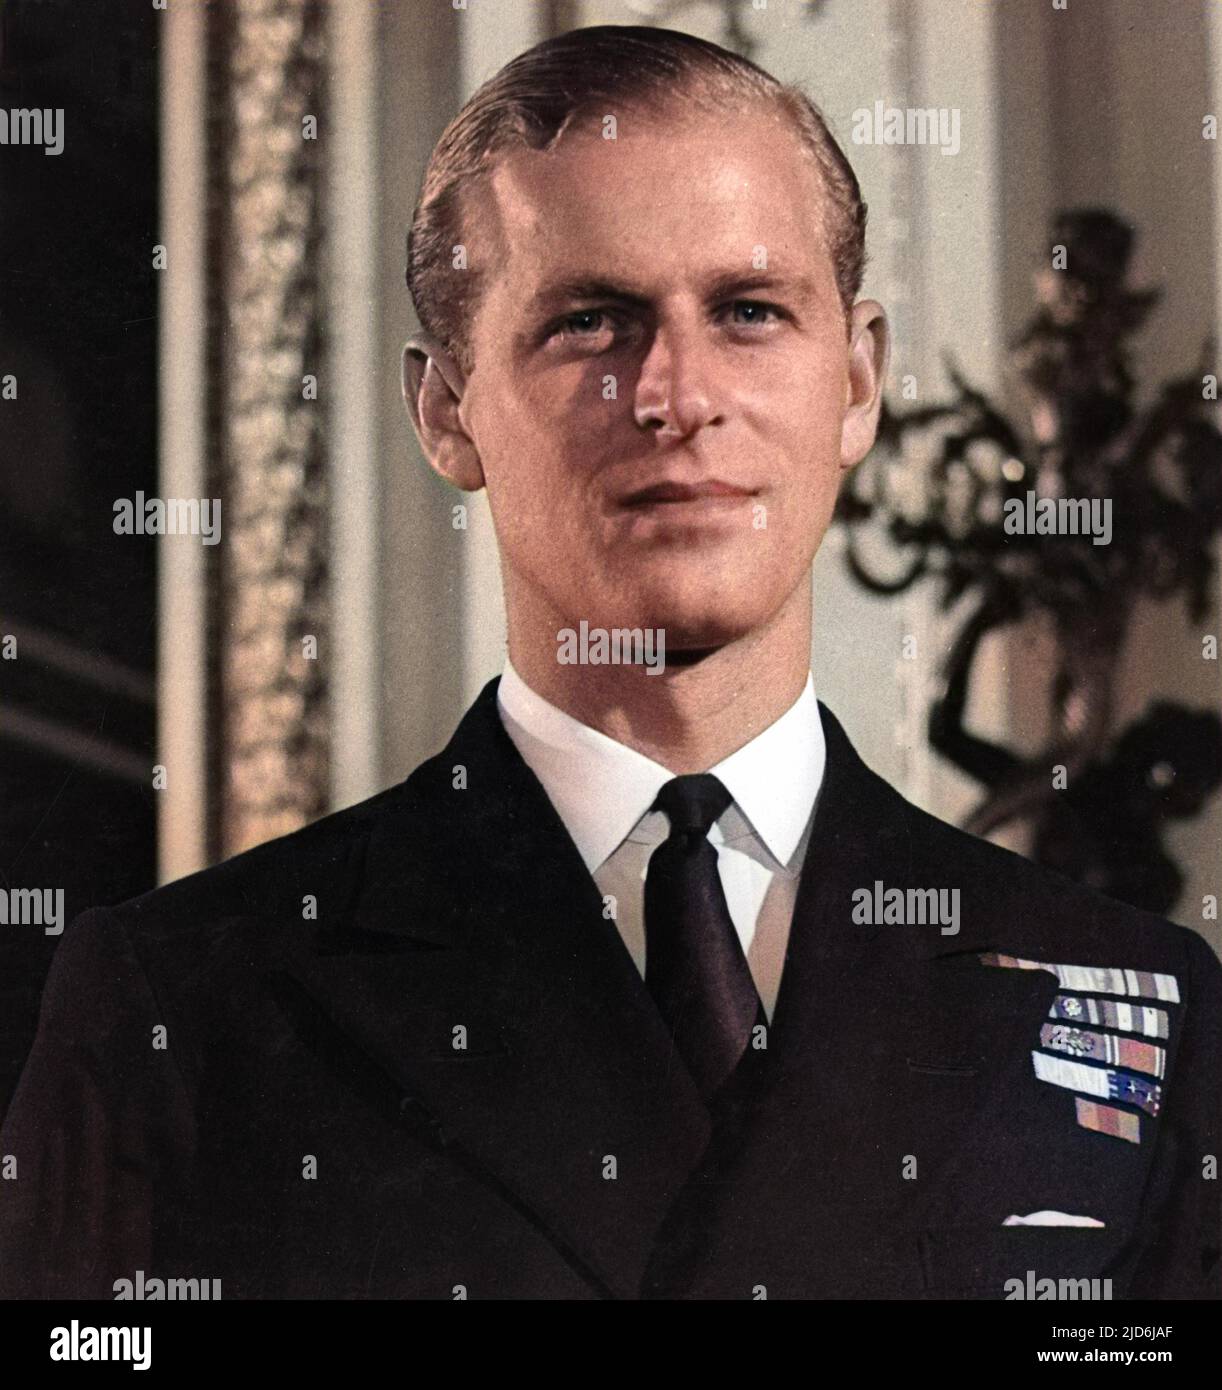 Leutnant Philip Mountbatten, später Prinz Philip, Herzog von Edinburgh (geboren 1921), abgebildet zur Zeit seiner Verlobung mit Prinzessin Elizabeth. Kolorierte Version von: 10507986 Datum: 1947 Stockfoto